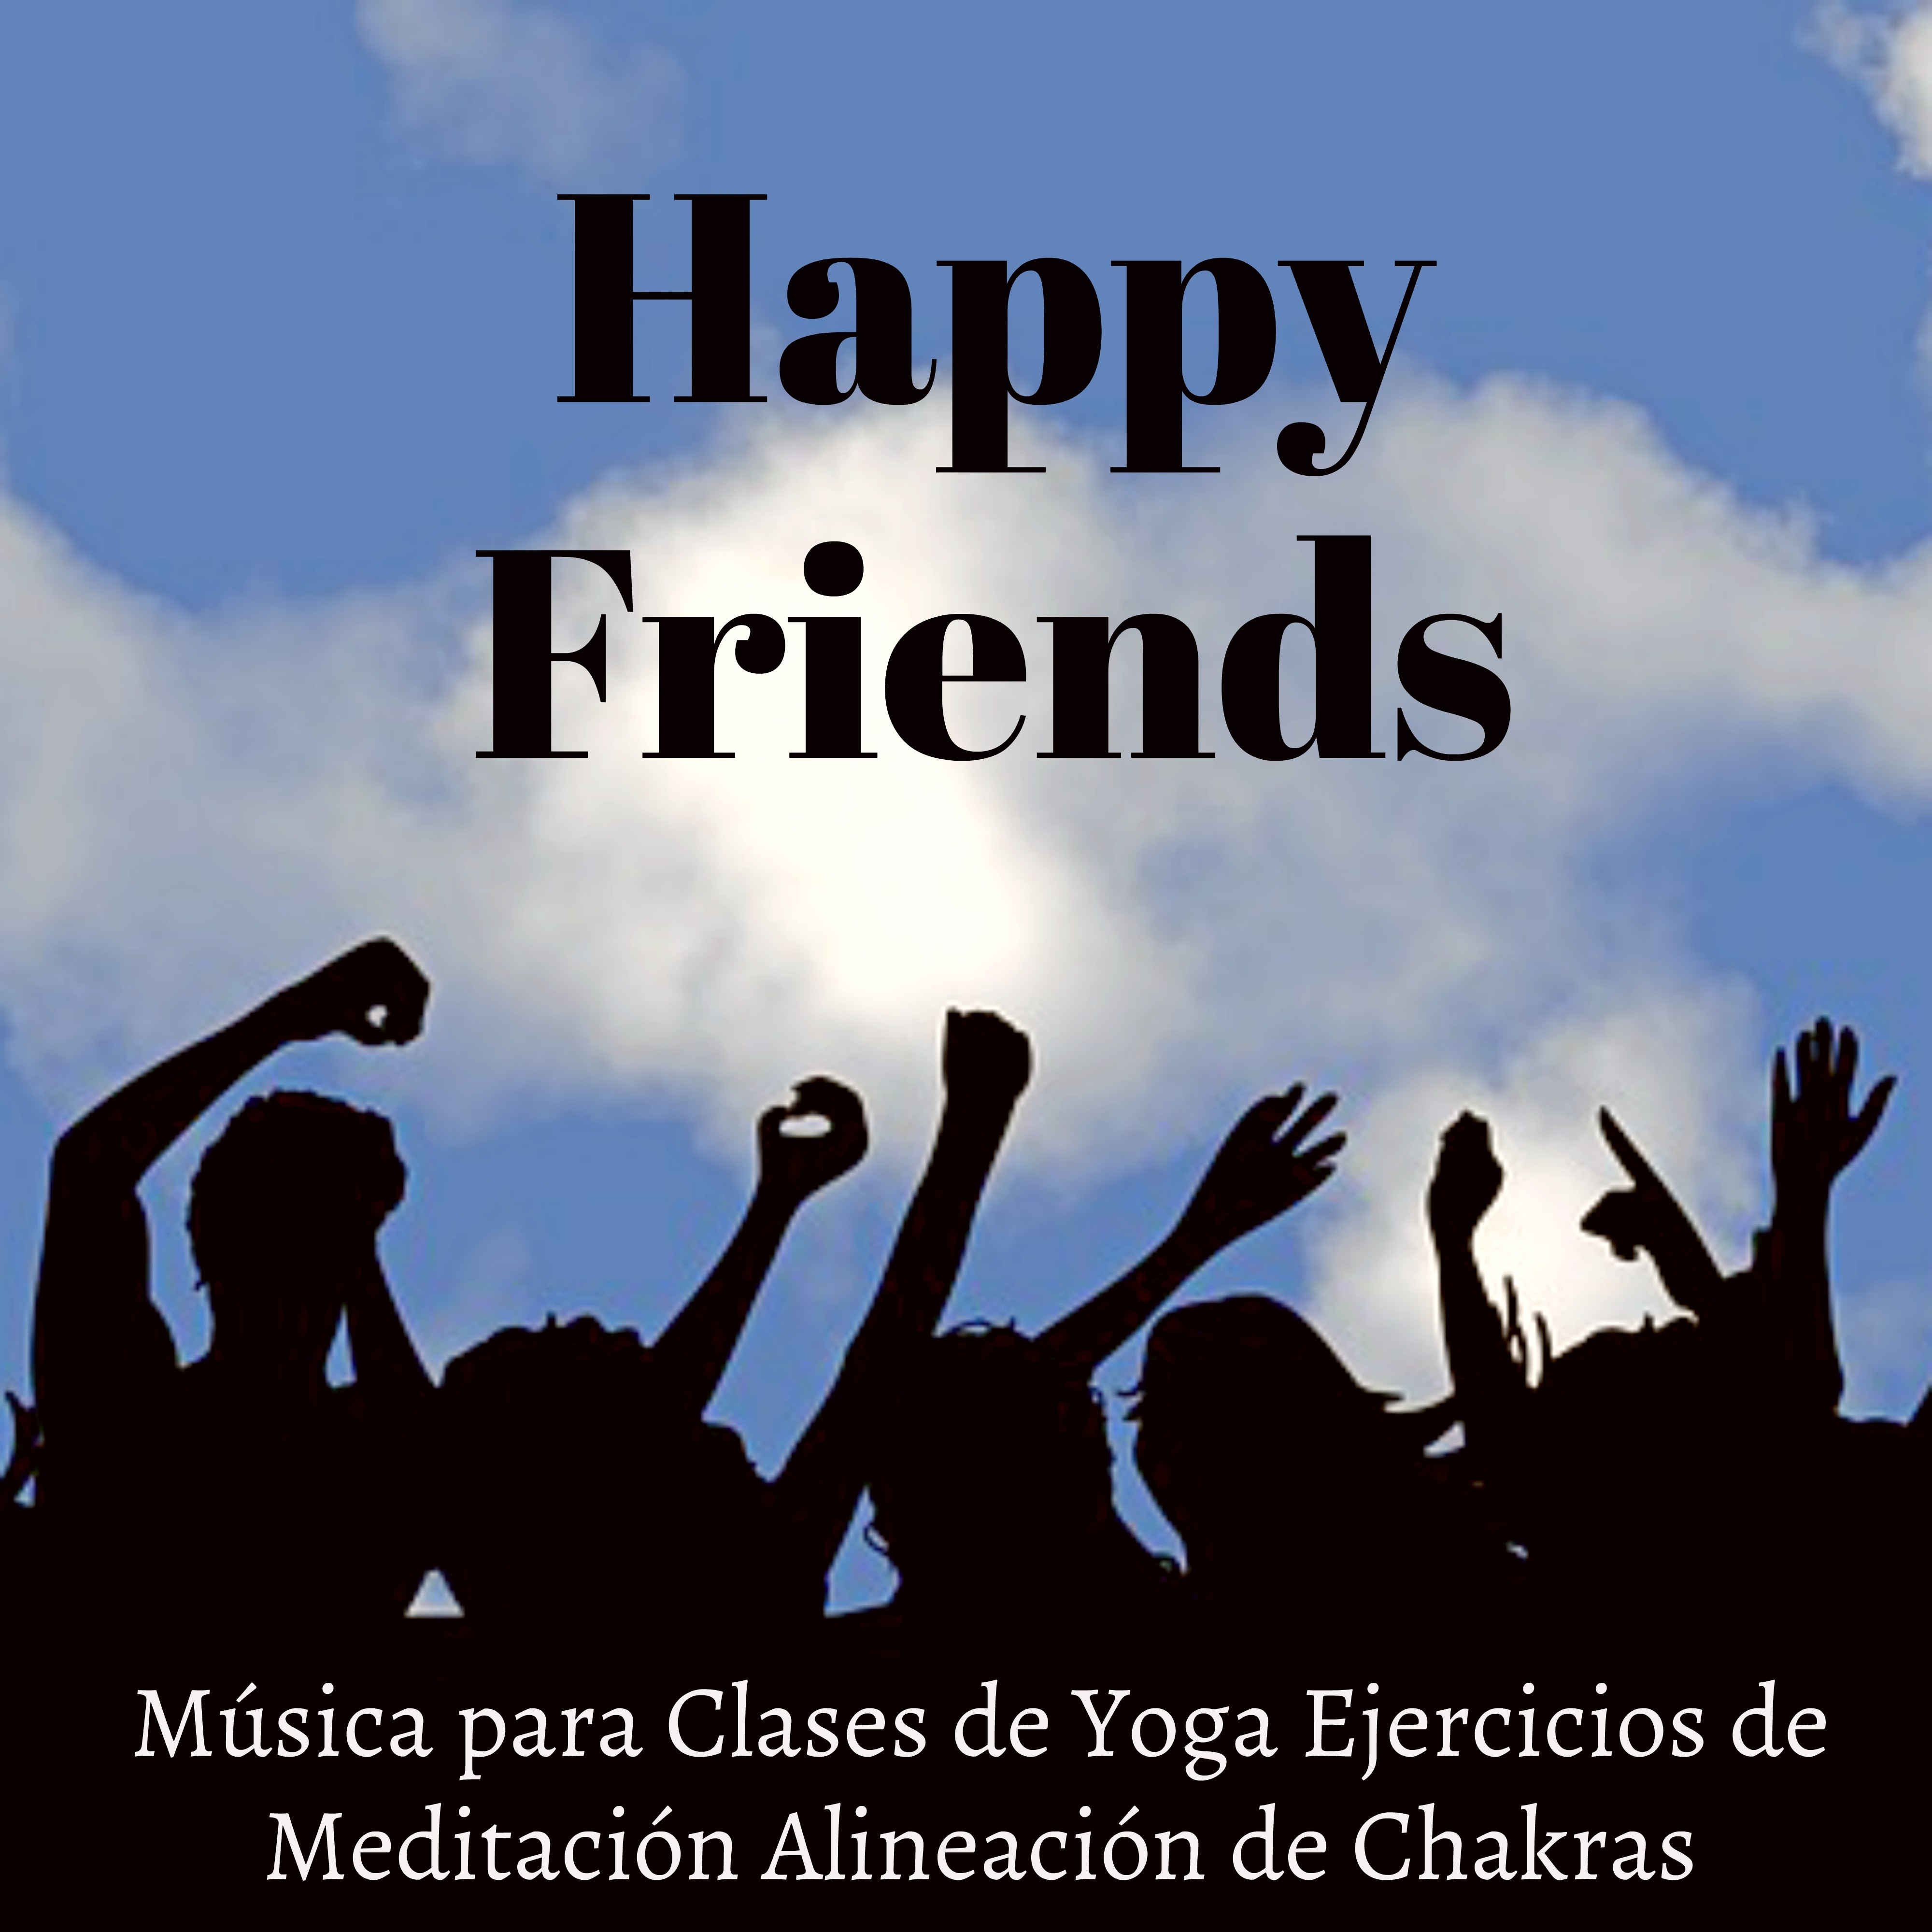 Happy Friends - Música New Age Relajante de la Naturaleza para Clases de Yoga Ejercicios de Meditación Alineación de Chakras con Sonidos Instrumentales Binaurales